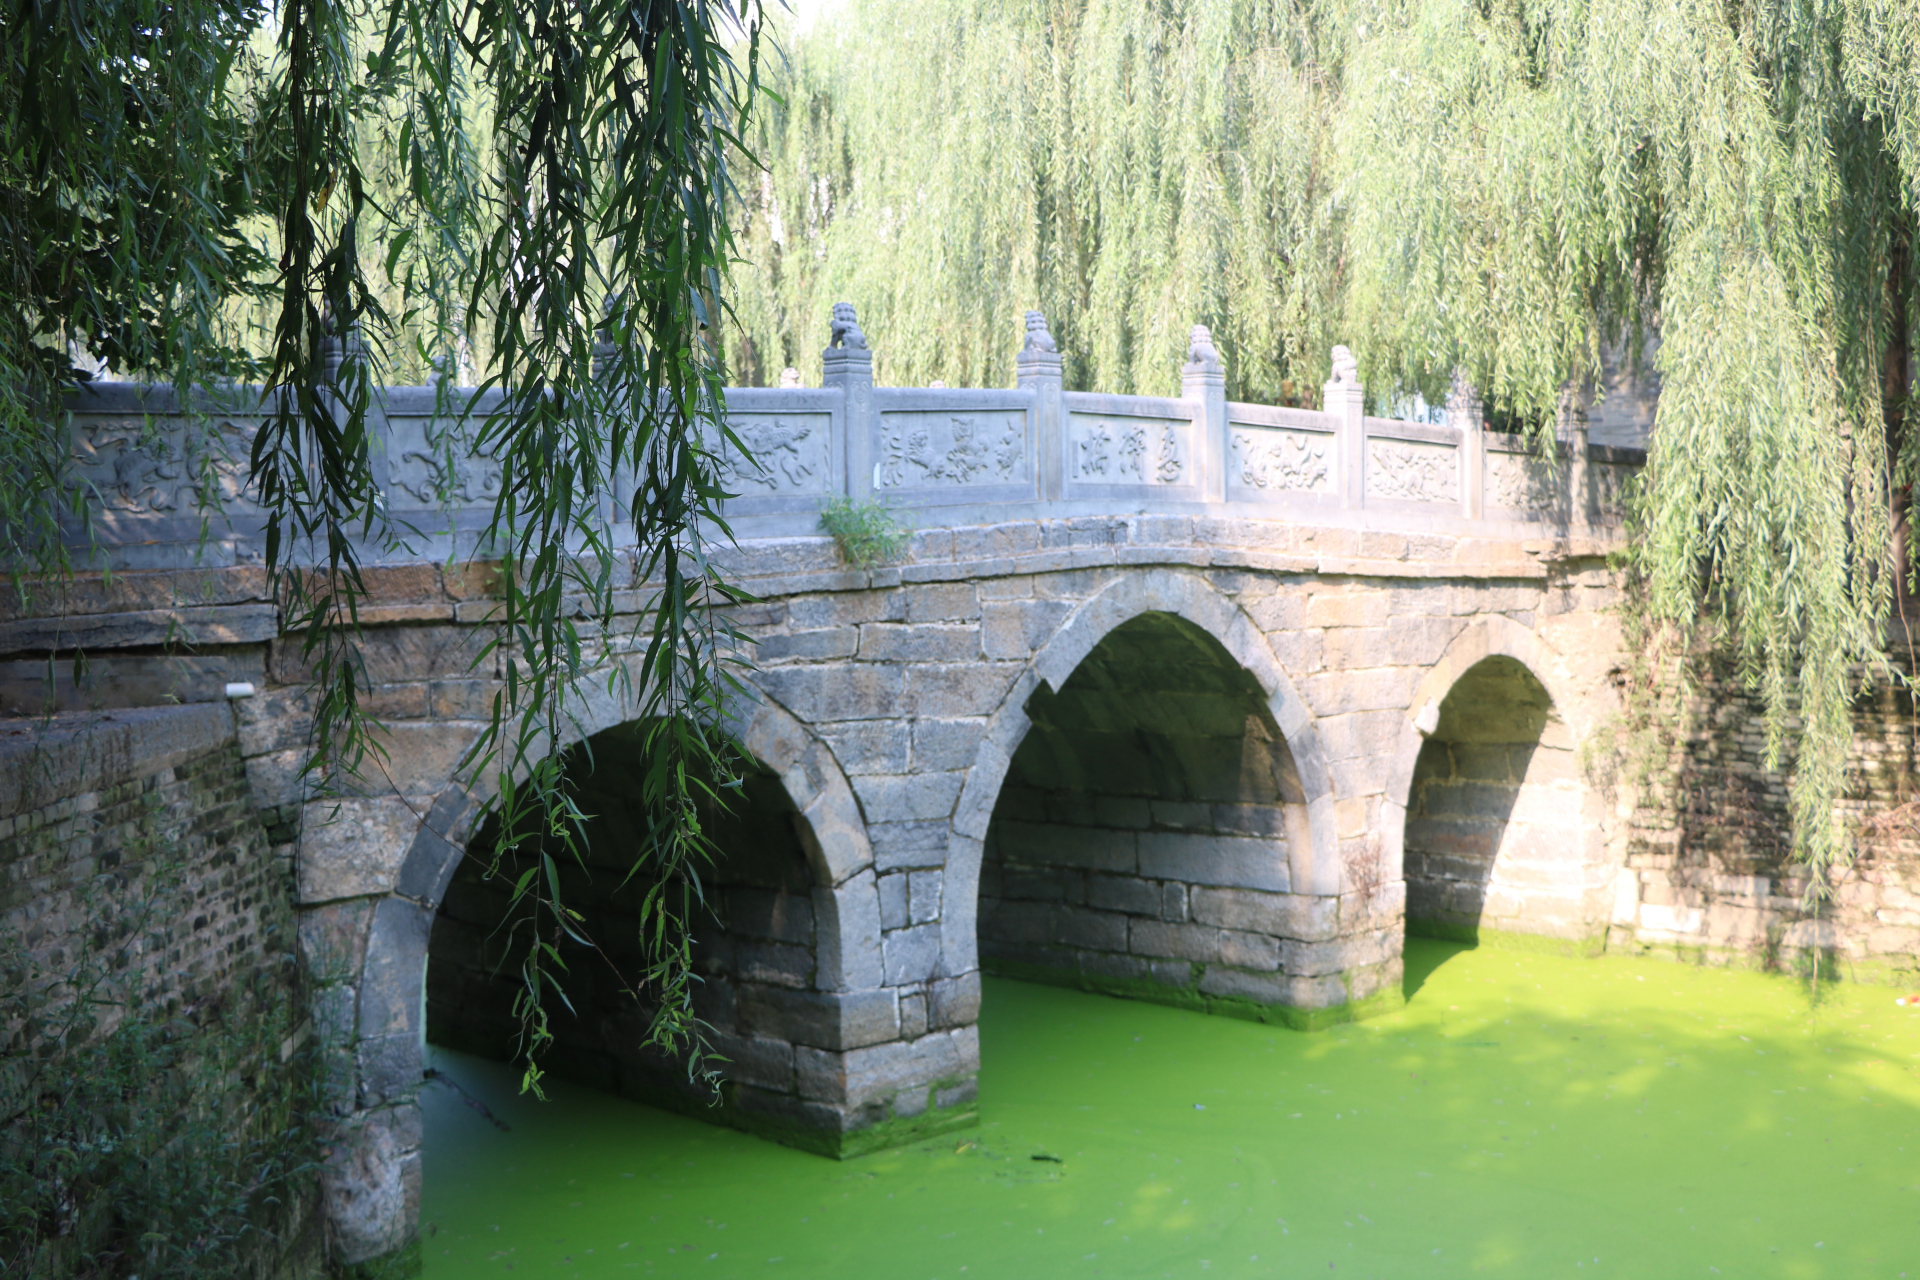 惠济古桥图片